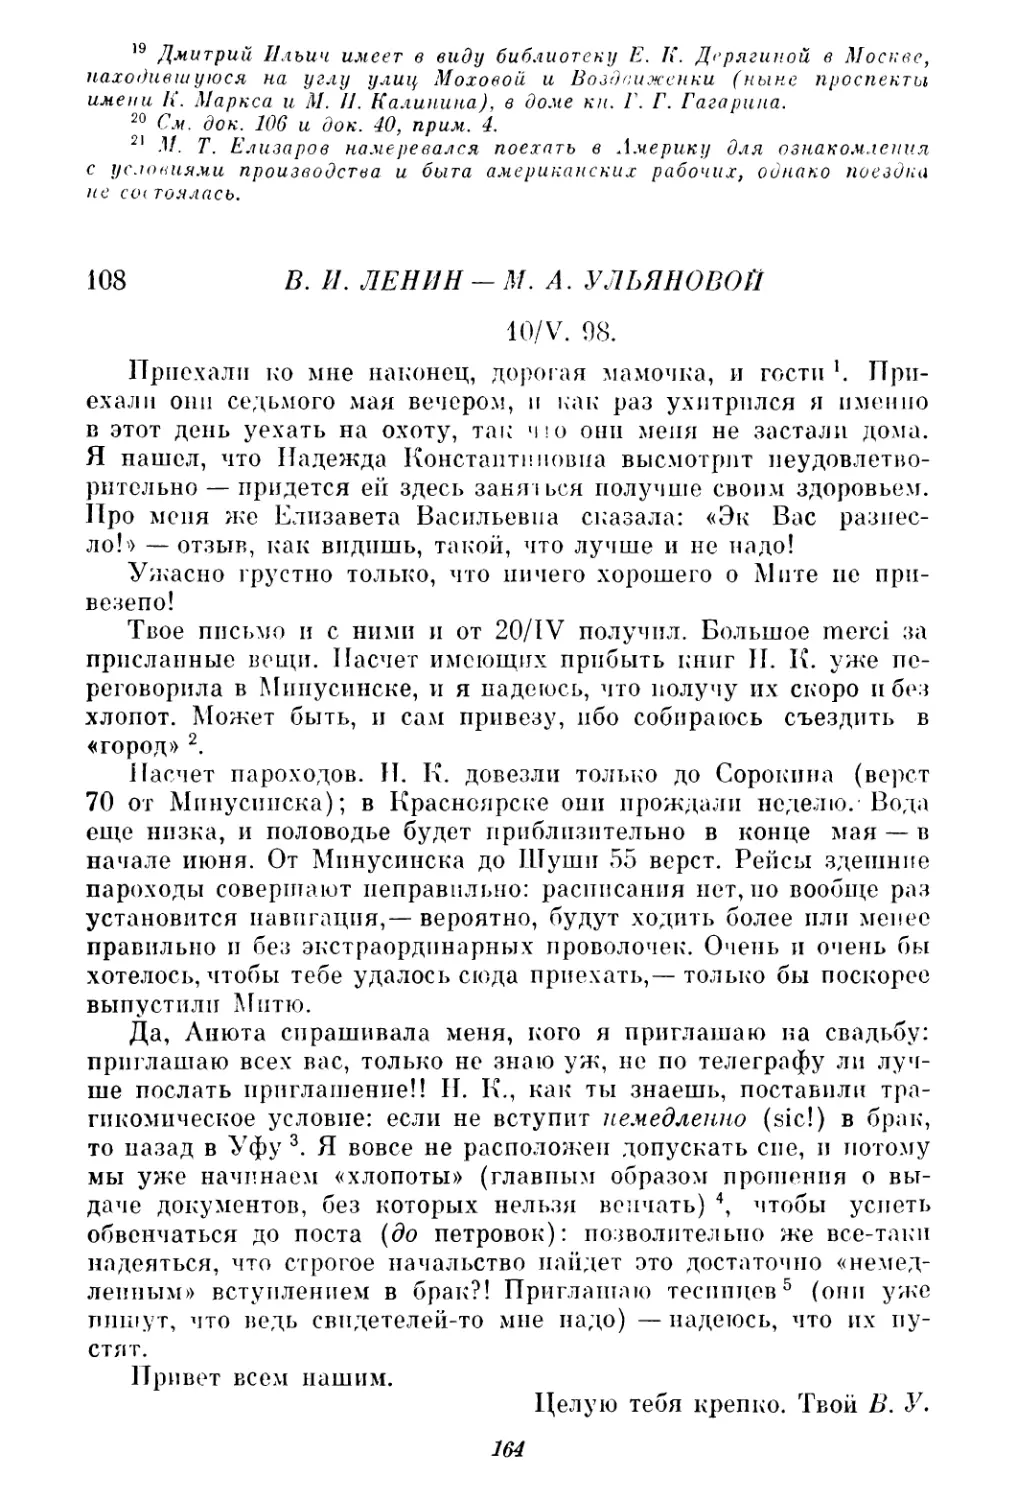 108. В. И. Ленин — М. А. Ульяновой. 10 мая